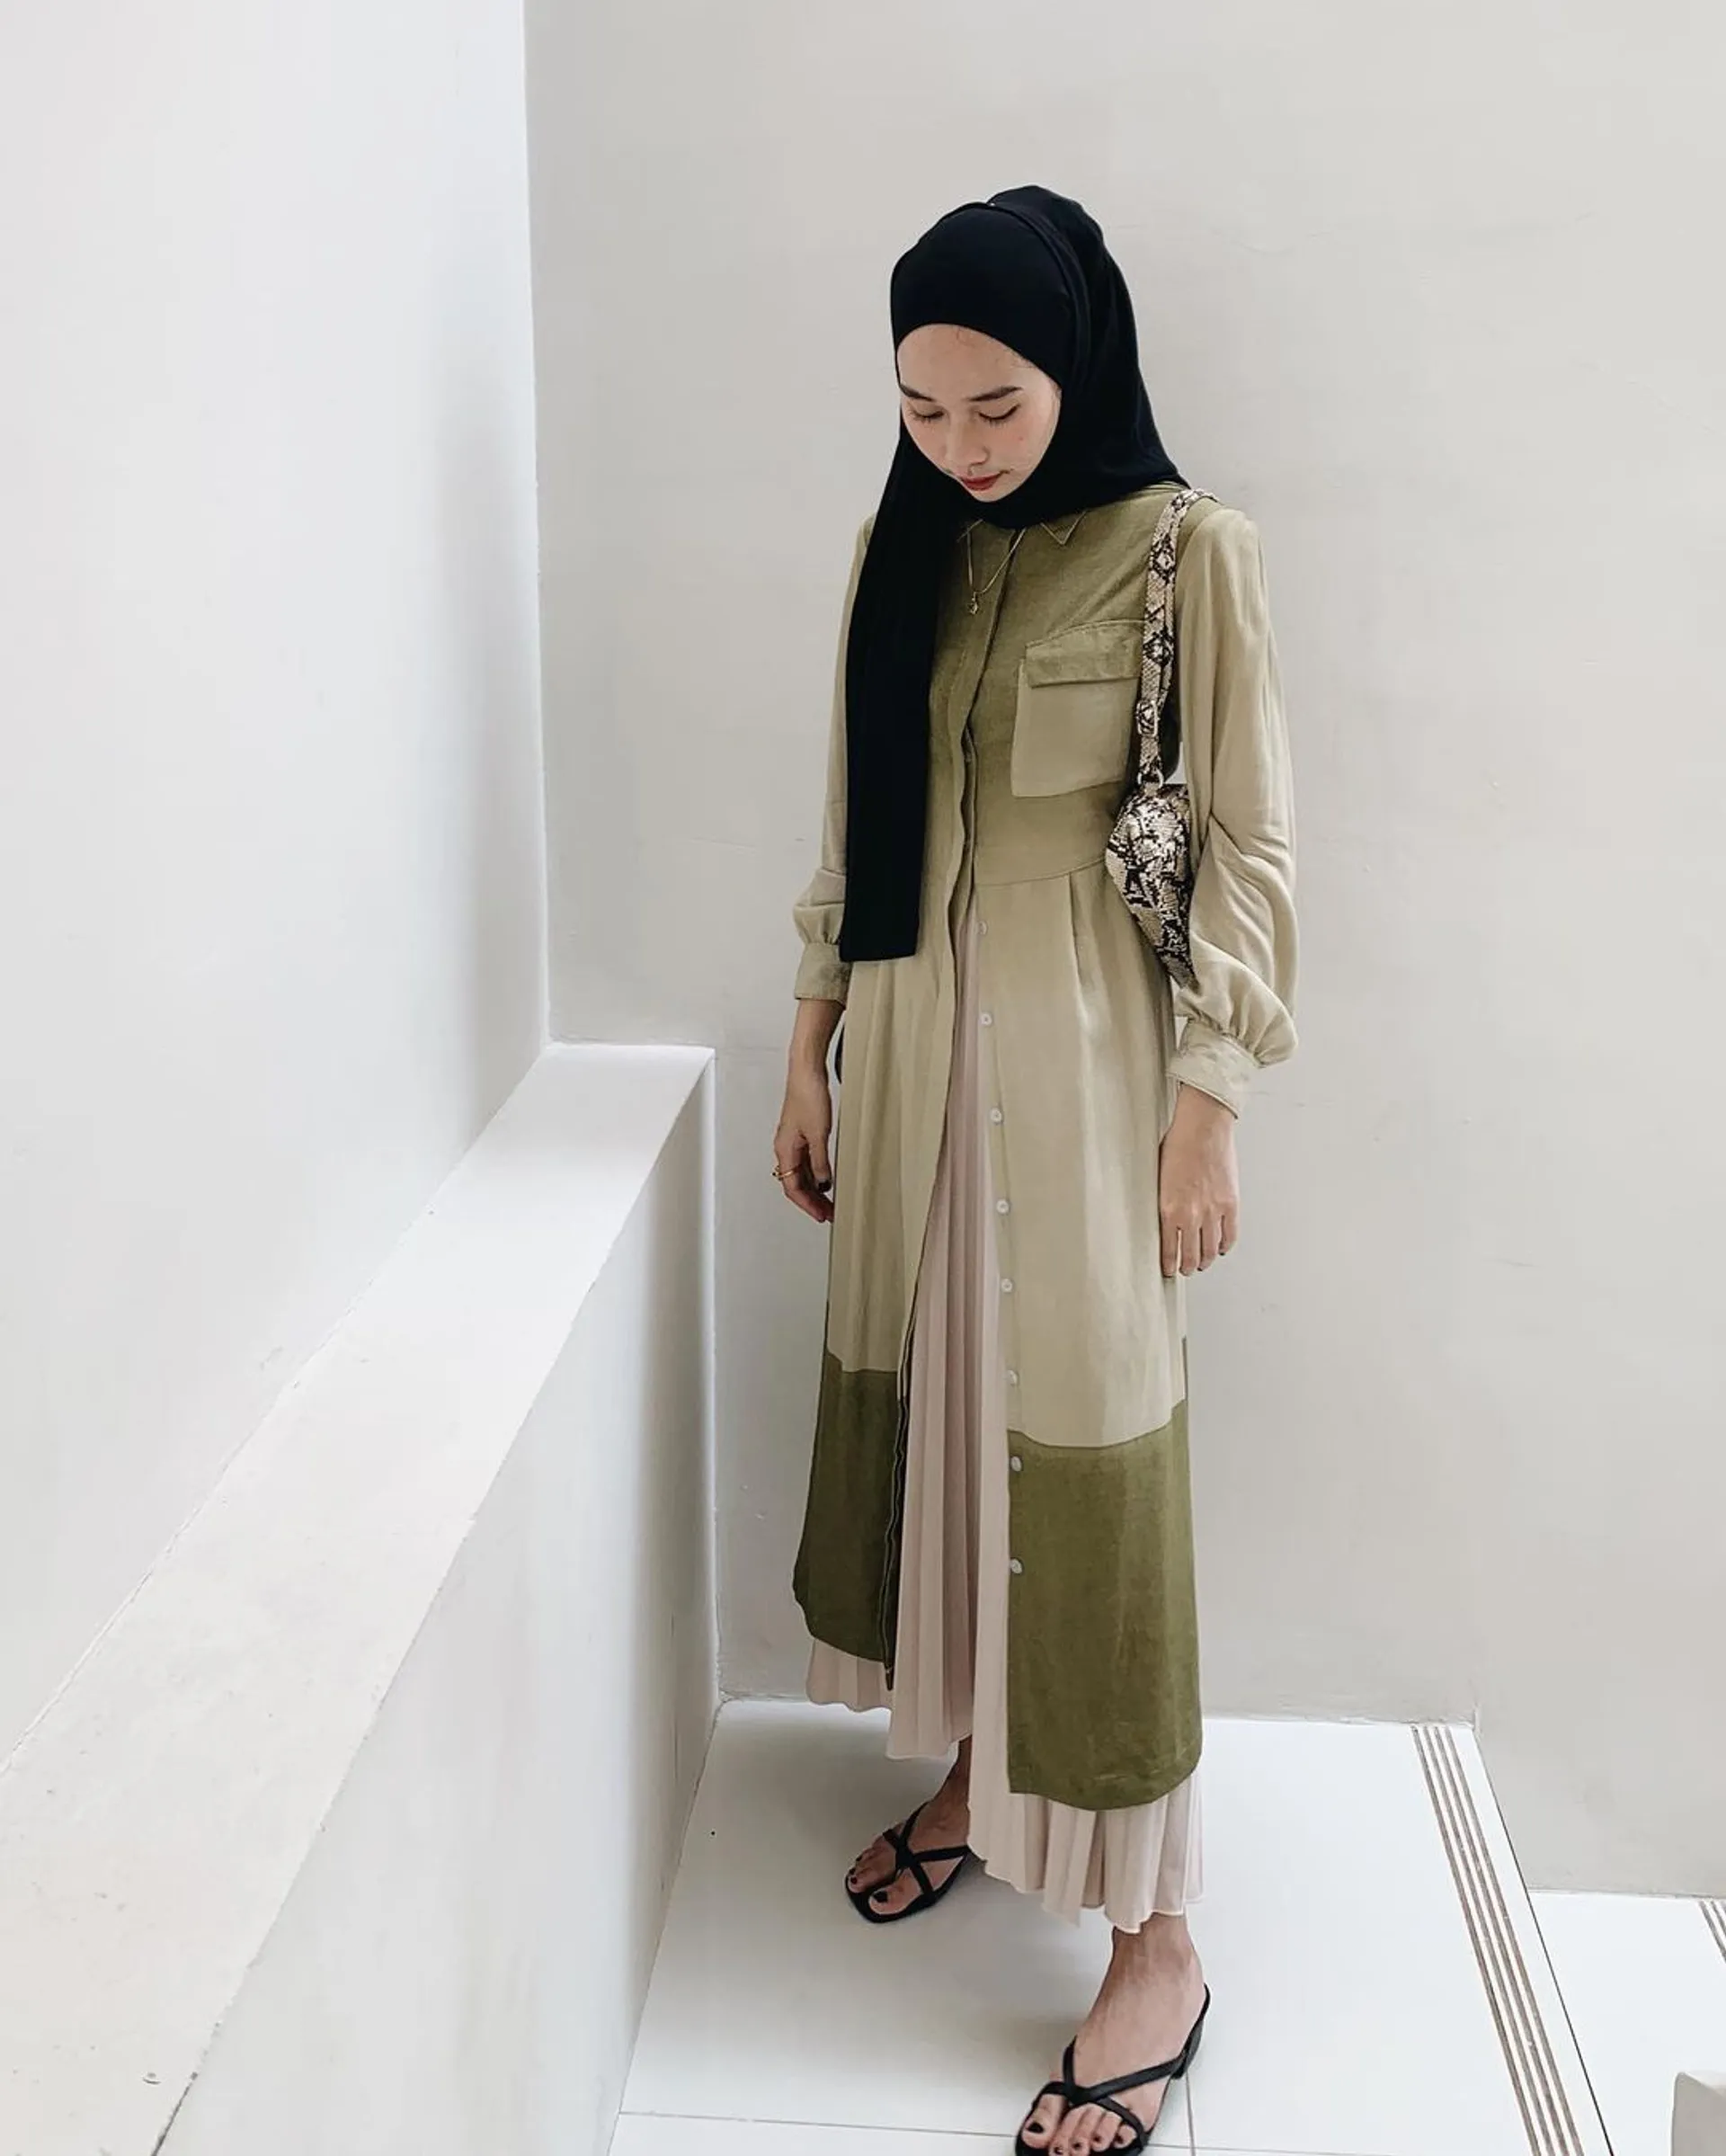 Inspirasi Model Dress Hijab Kekinian untuk Cewek Hijabers